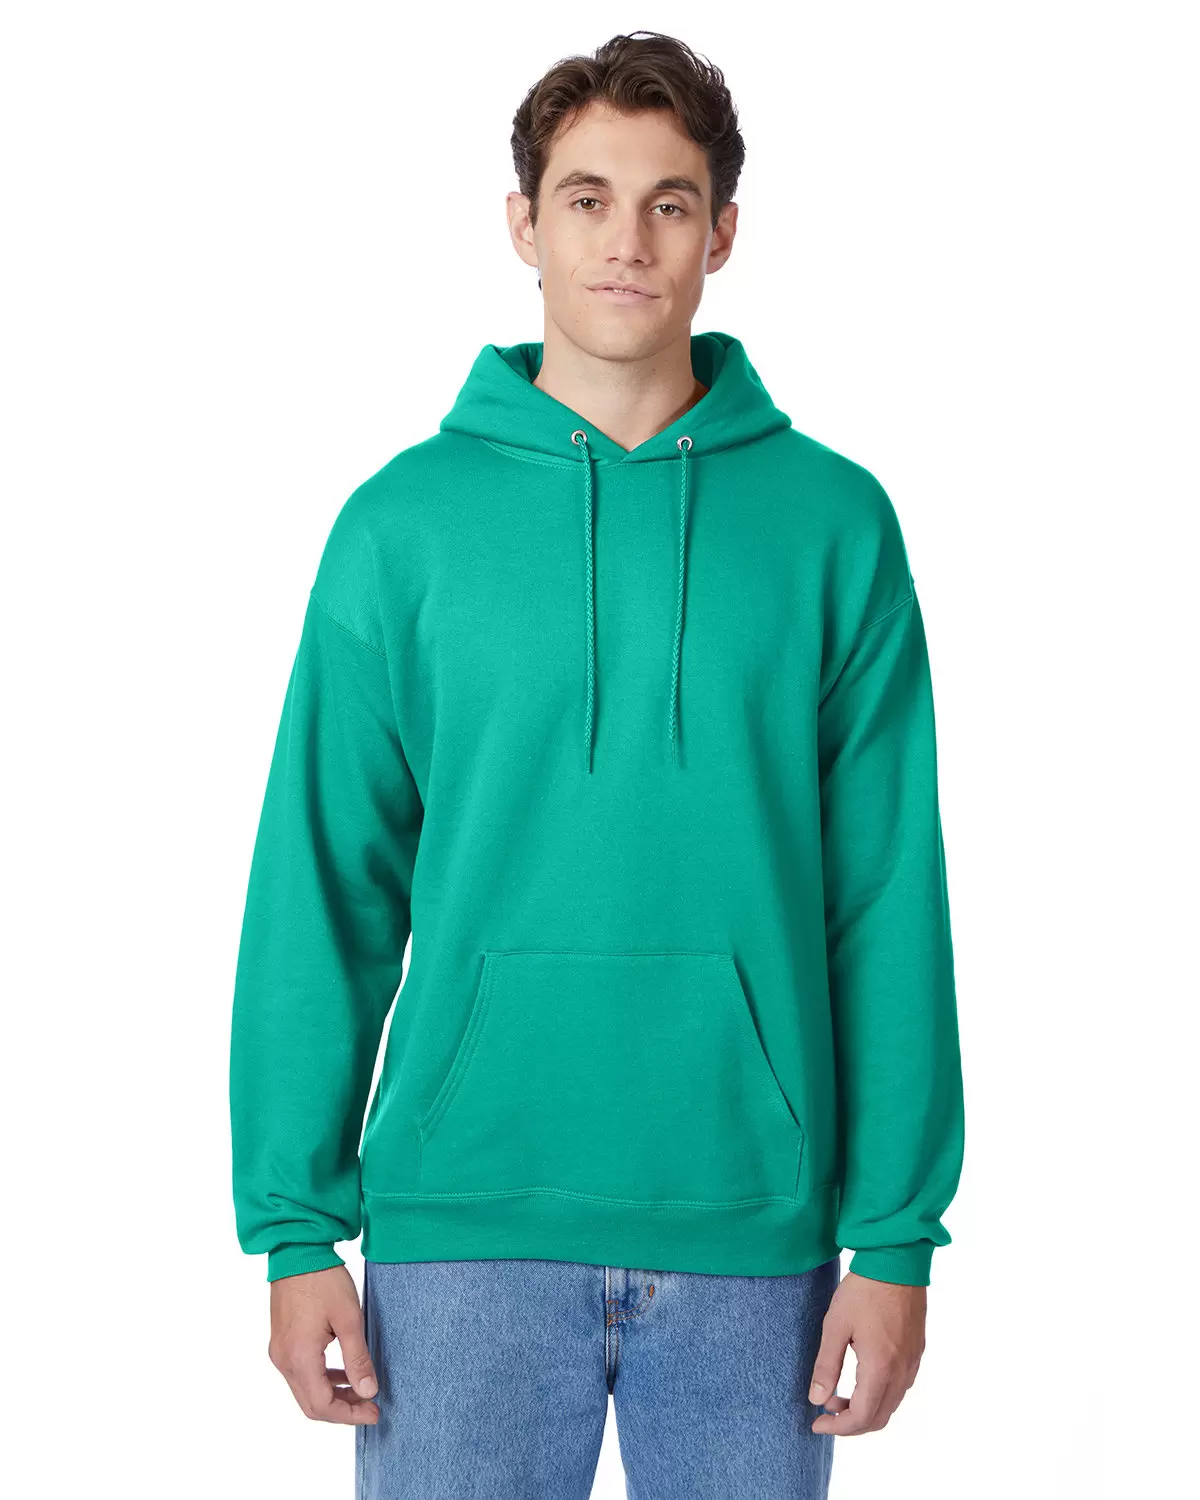 P170 Hanes PrintPro XP Comfortblend Hooded Sweatshirt - From $11.94